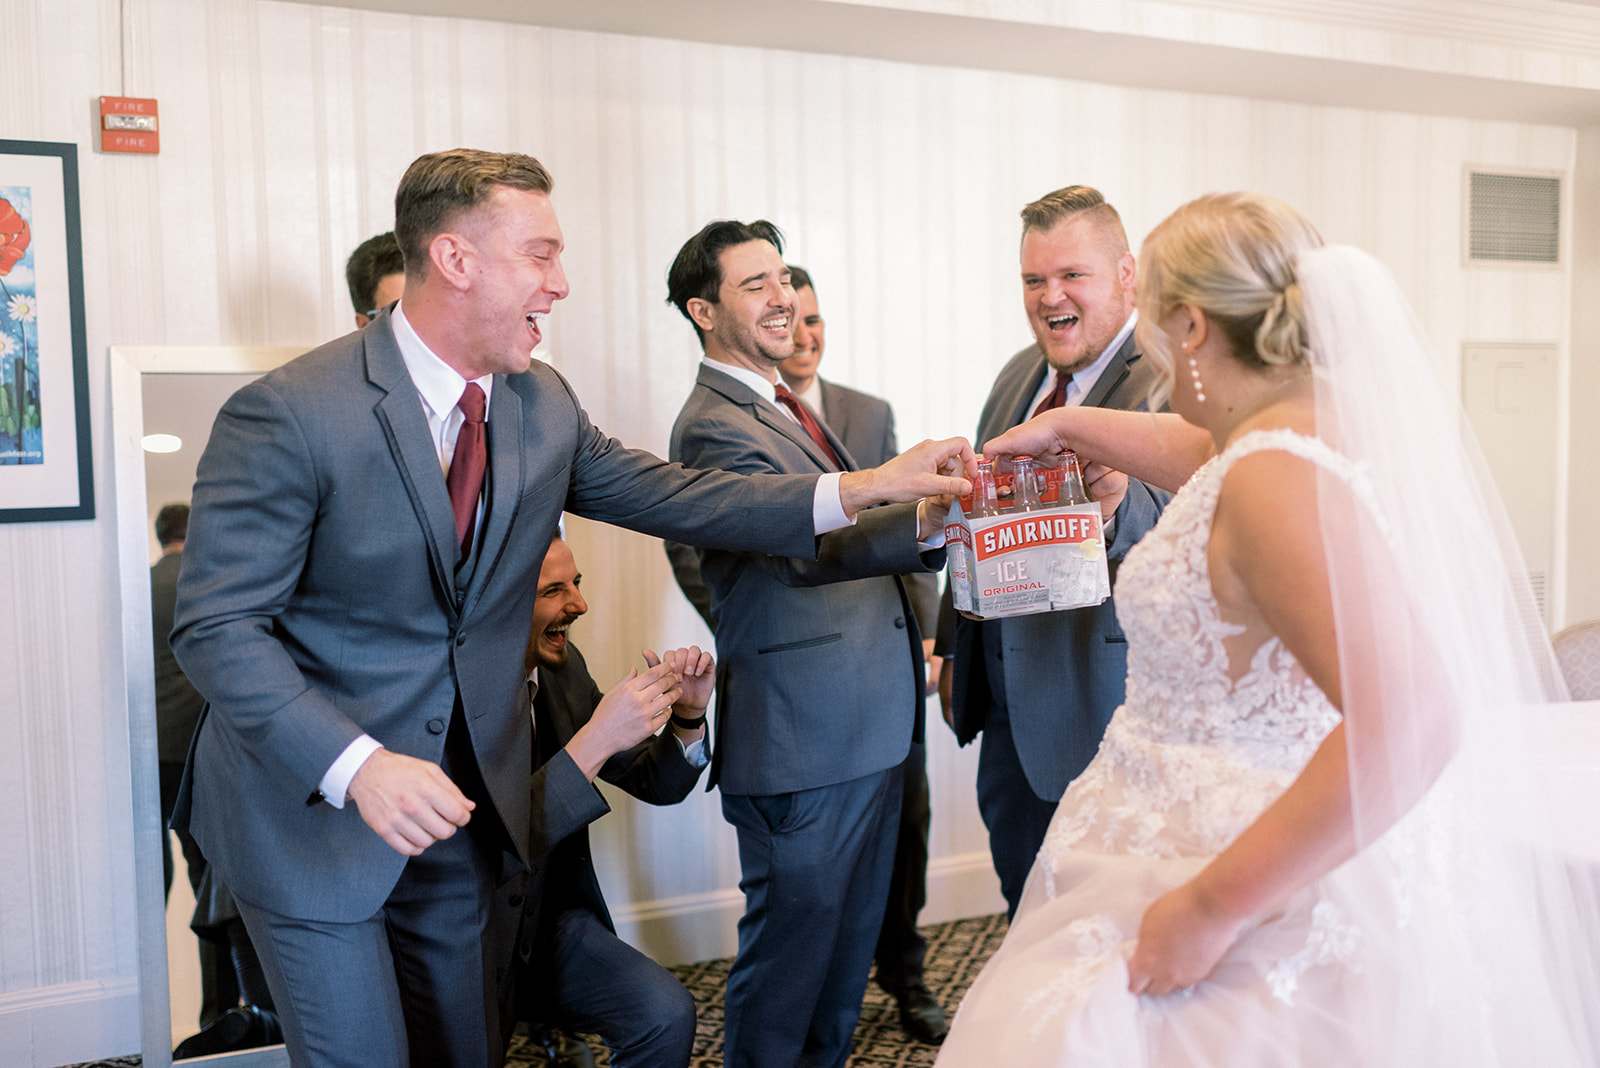 Pennsylvania wedding photographer captures bride handing groomsmen 6-pack